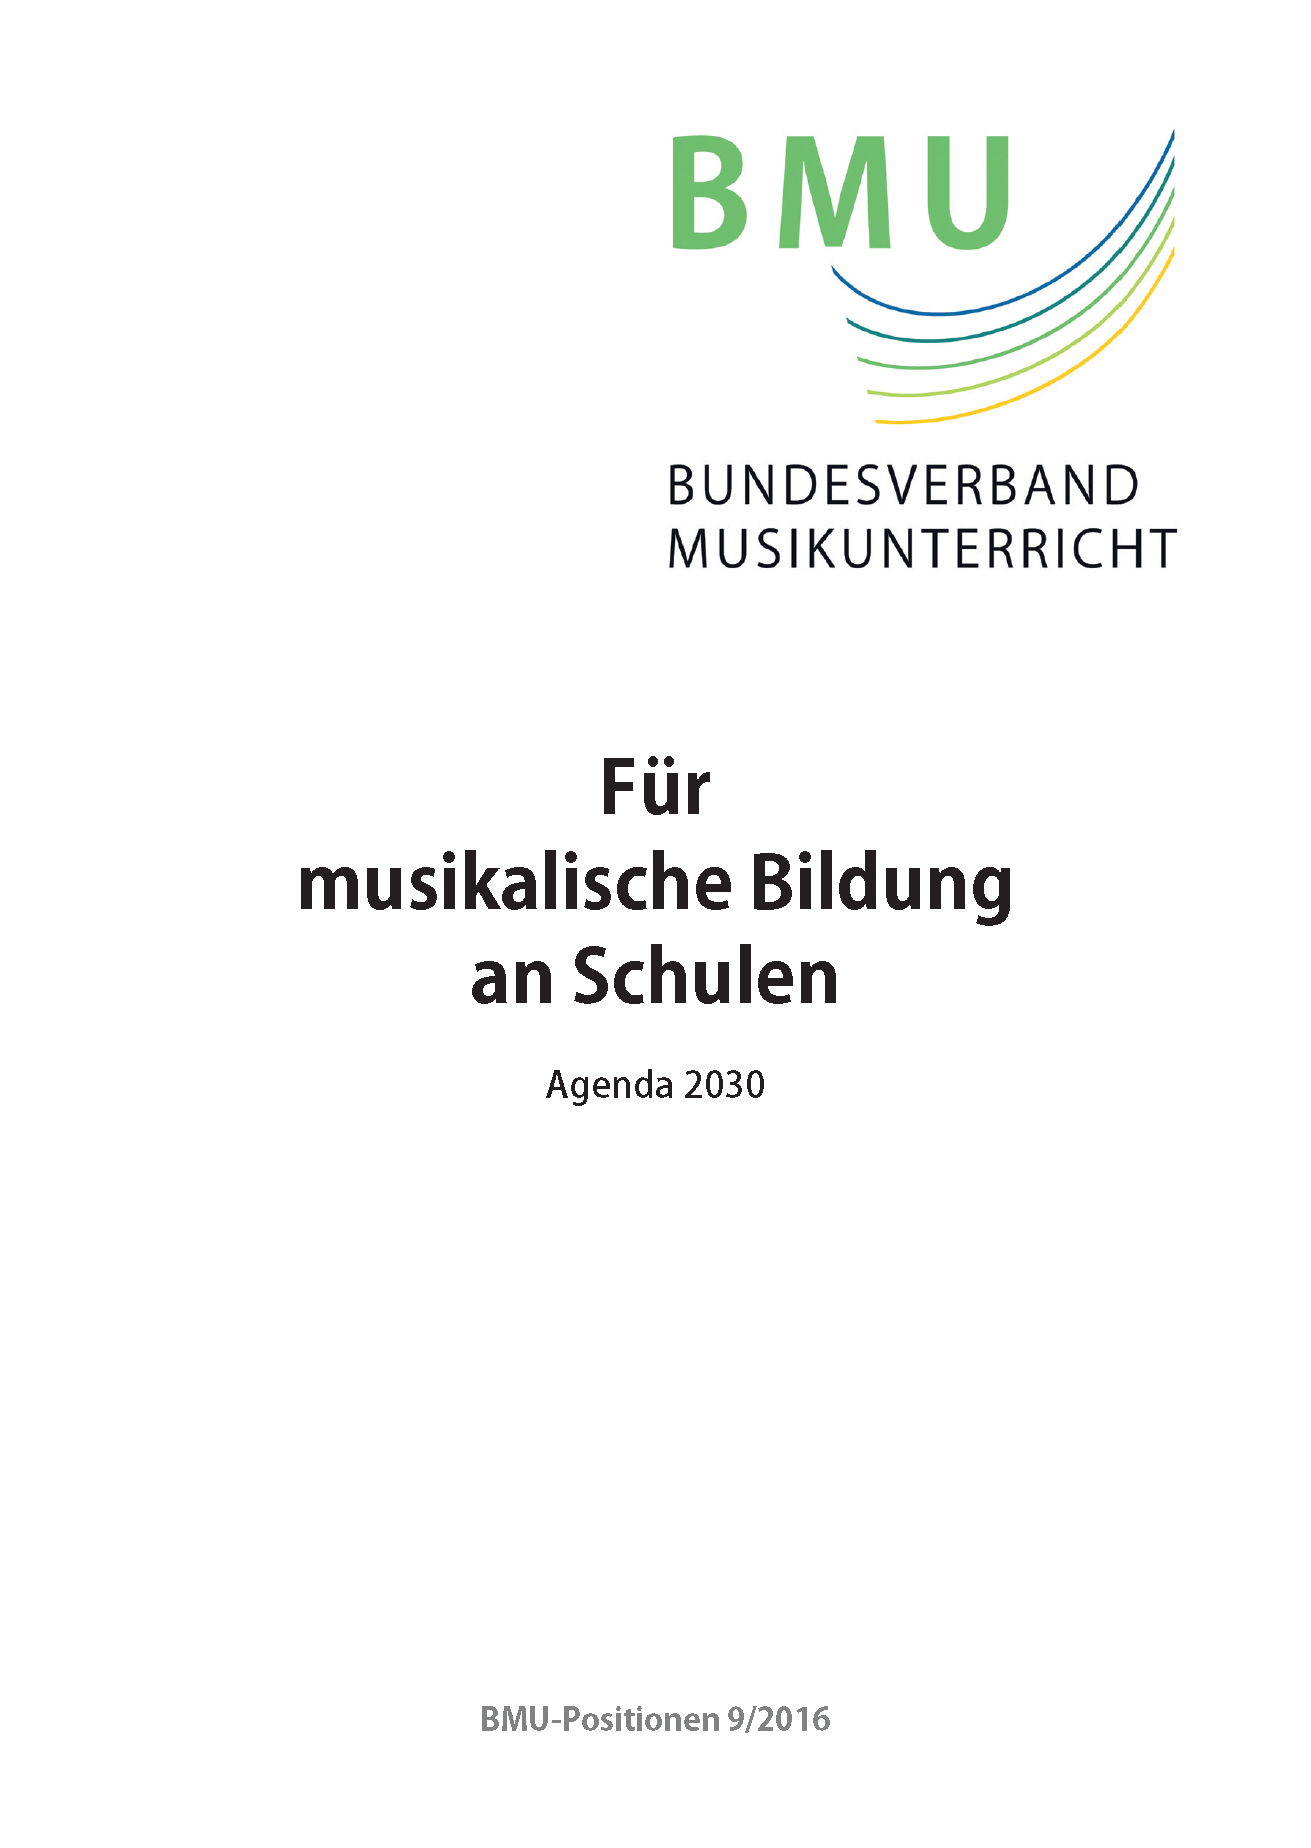 BMU-Grundsatzpapier "Für musikalische Bildung an Schulen - Agenda-2030" von 2016